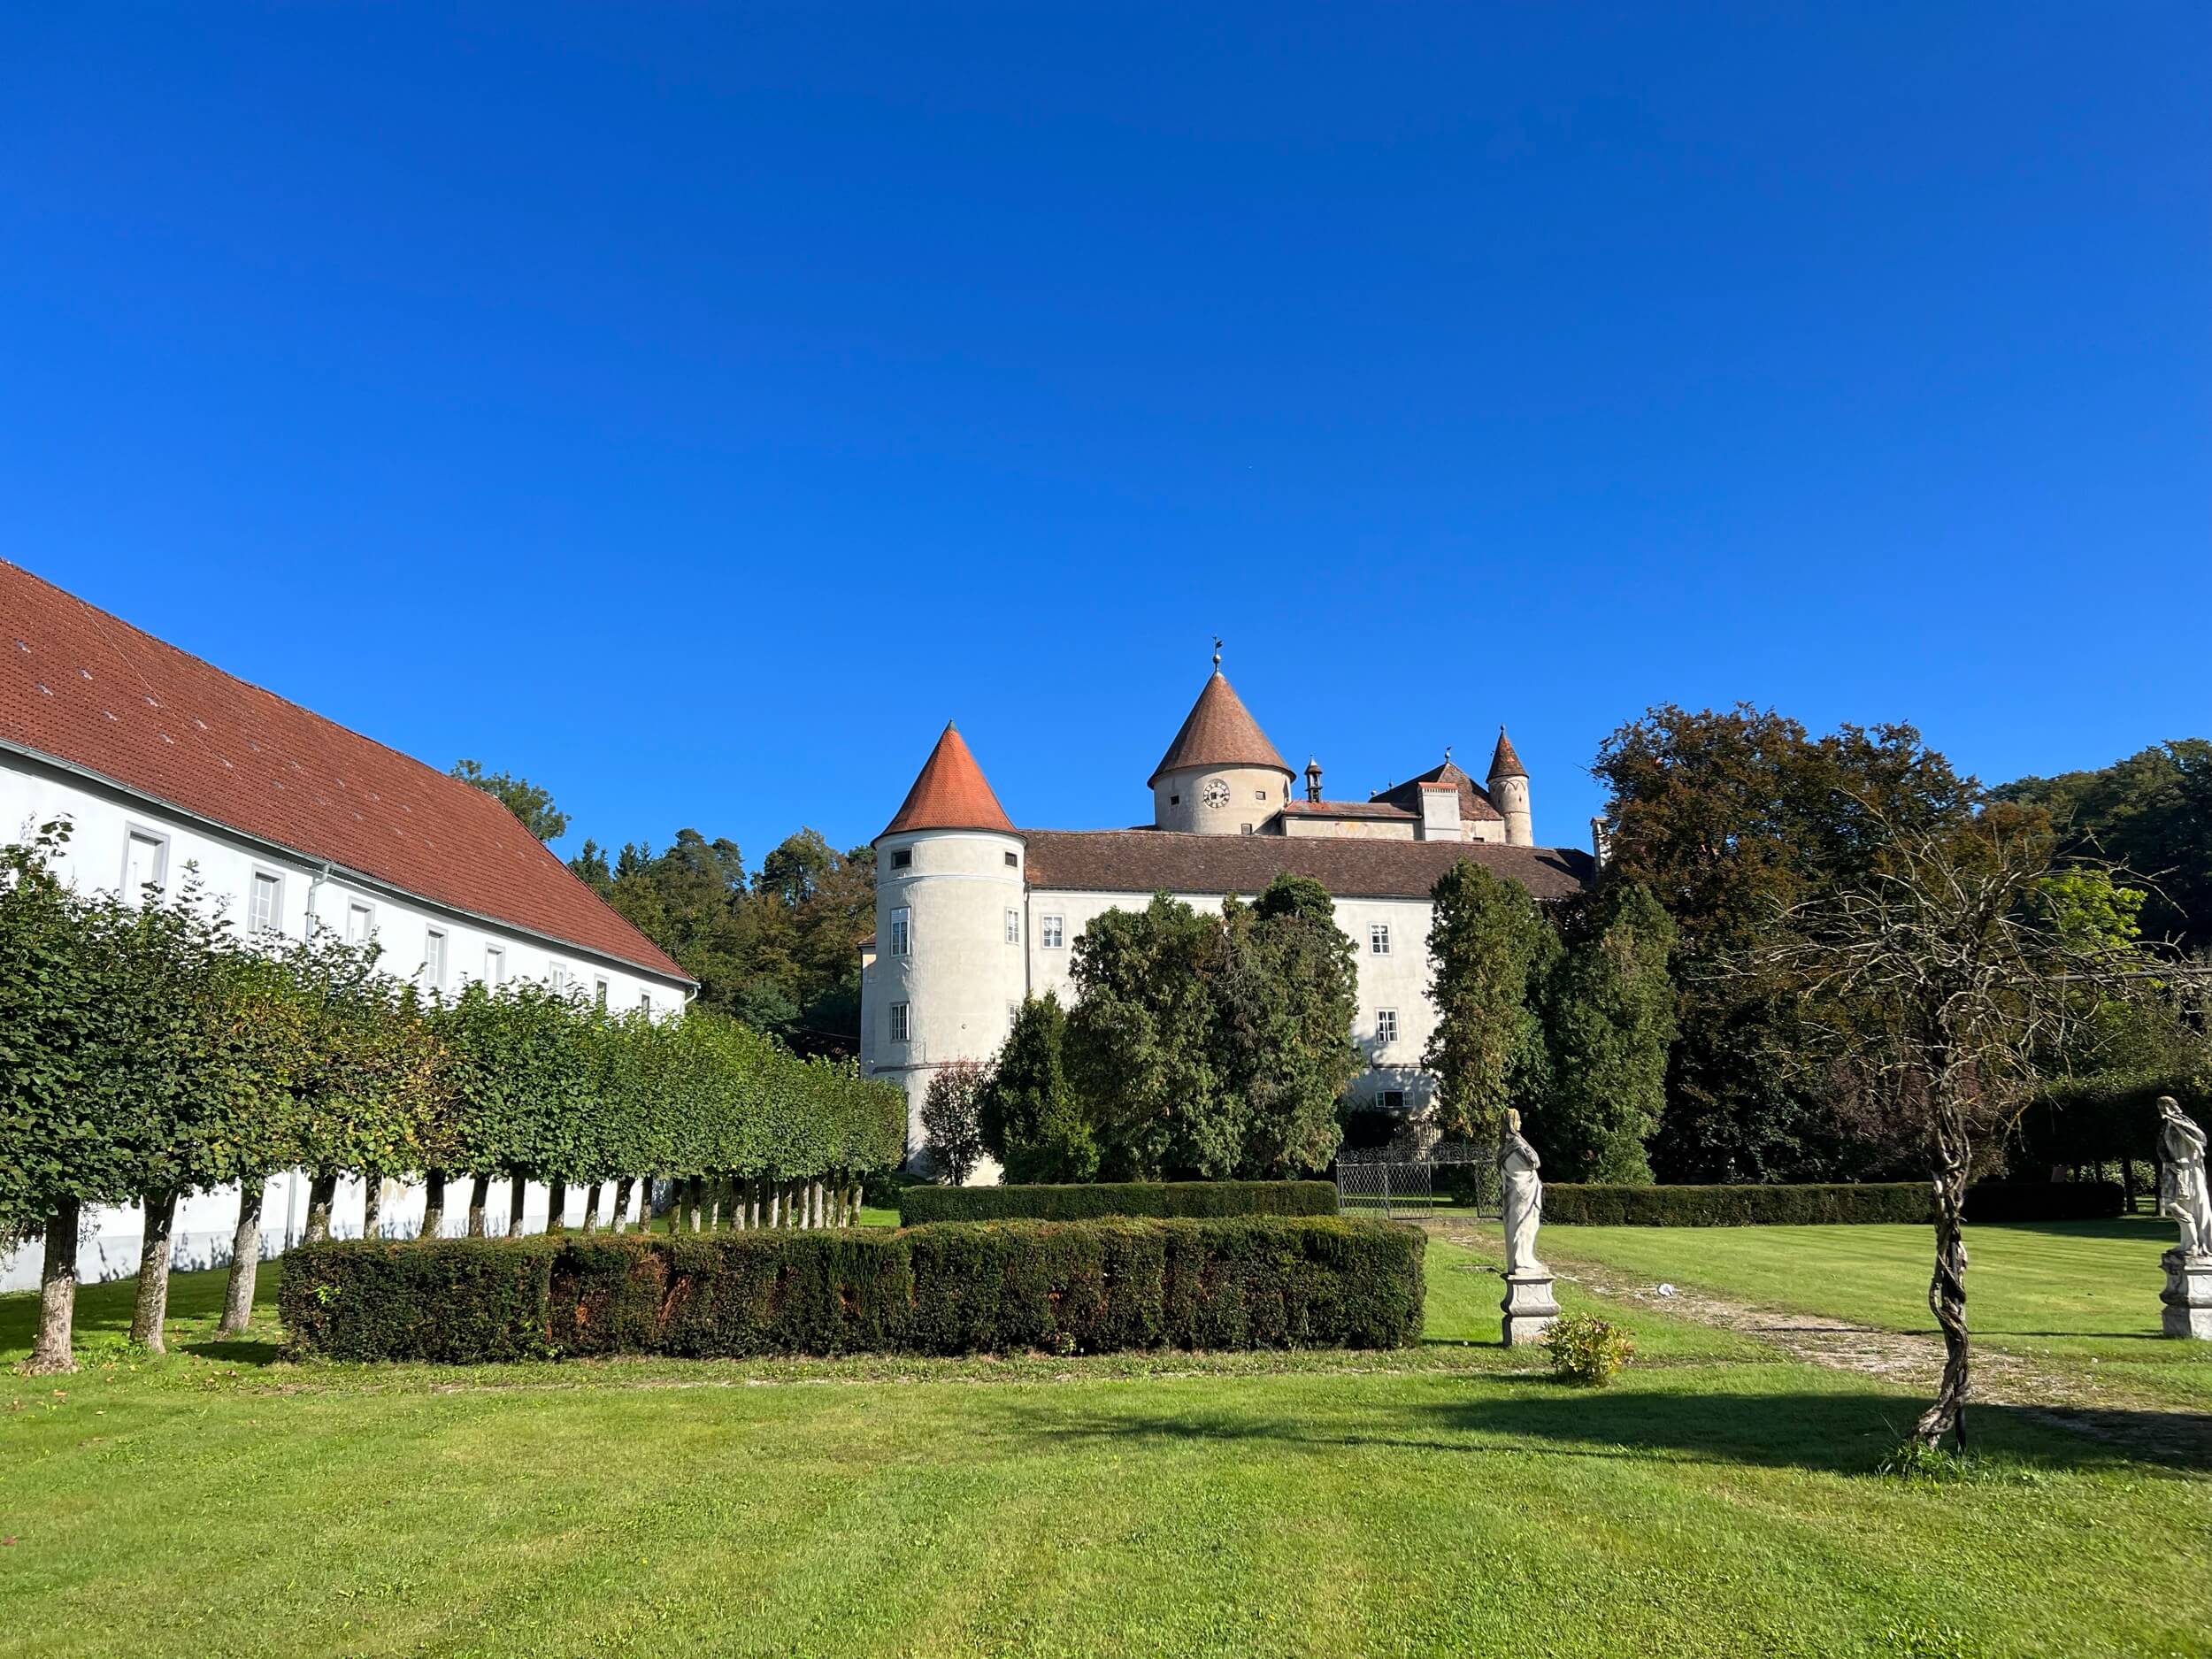 Schloss Bliock vom Garten Kopie schloss schwertberg